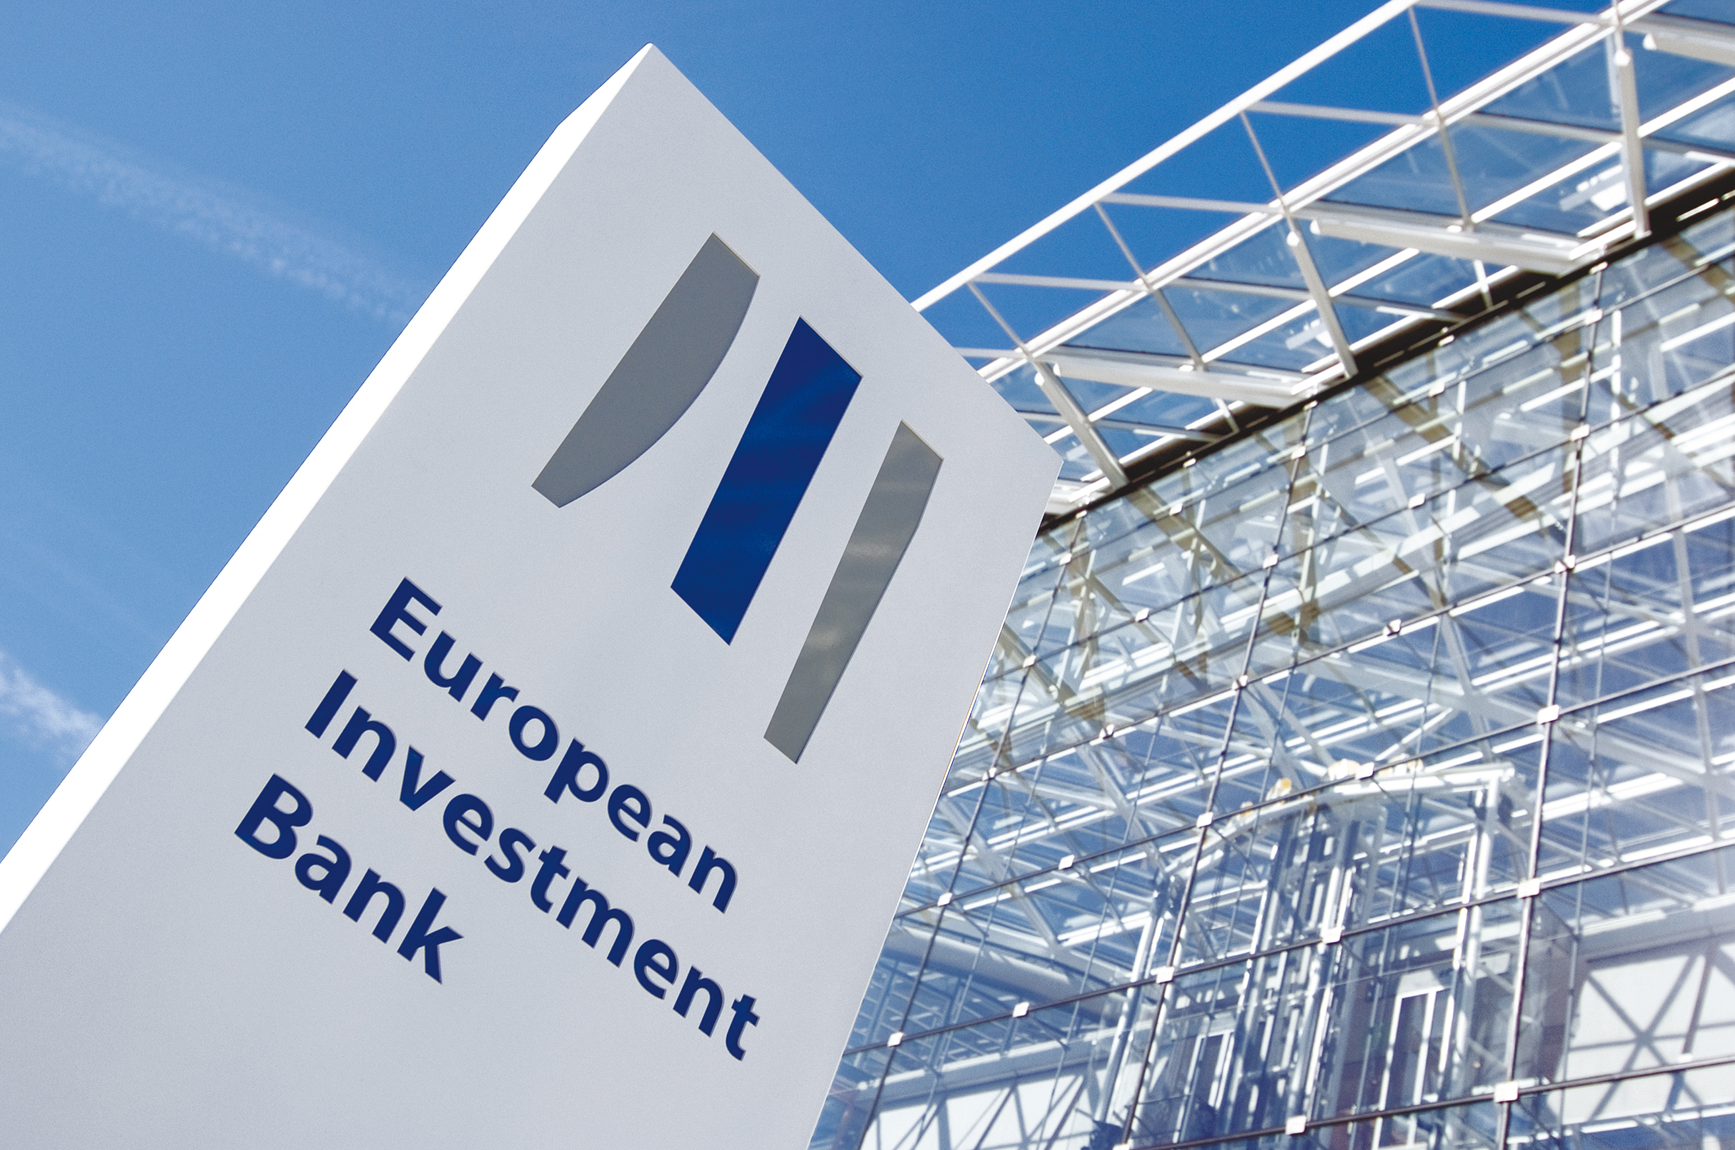 
В 2016 году Египет подпишет с Европейским инвестиционным банком соглашение на сумму US$370 млн